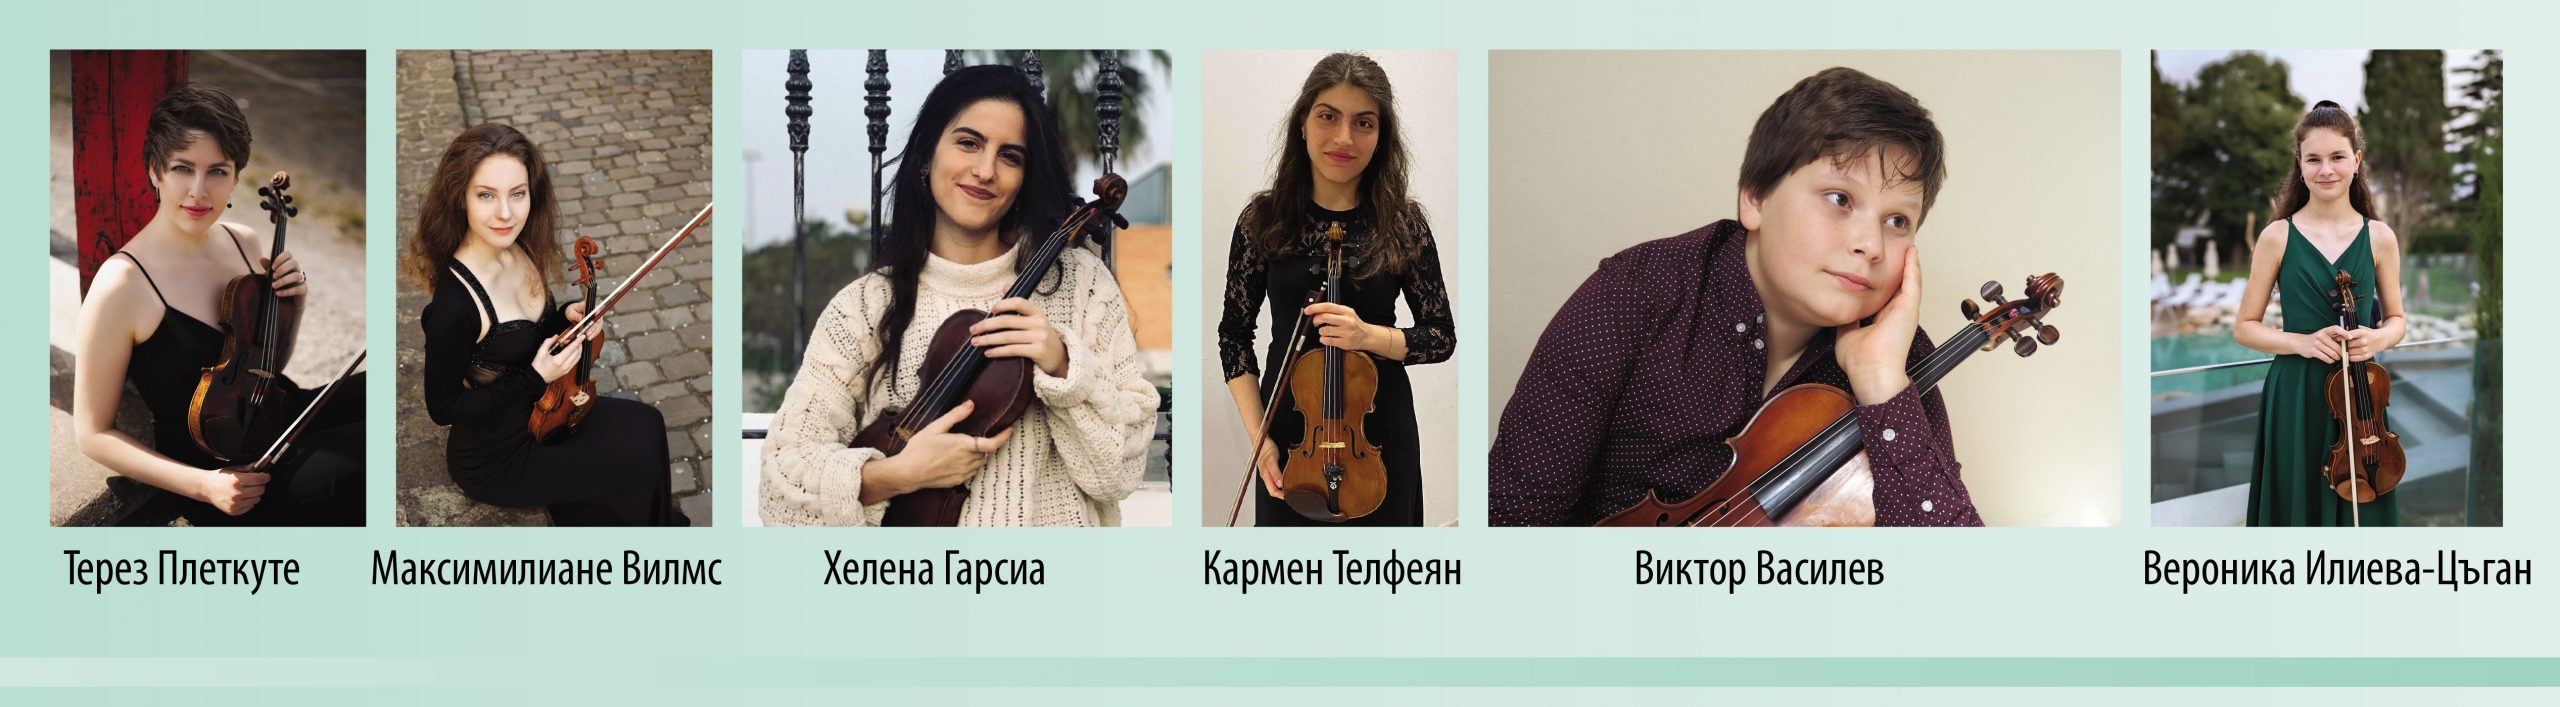 XXXVII Младежки музикален форум във Враца започва с концерт за цигулка и оркестър